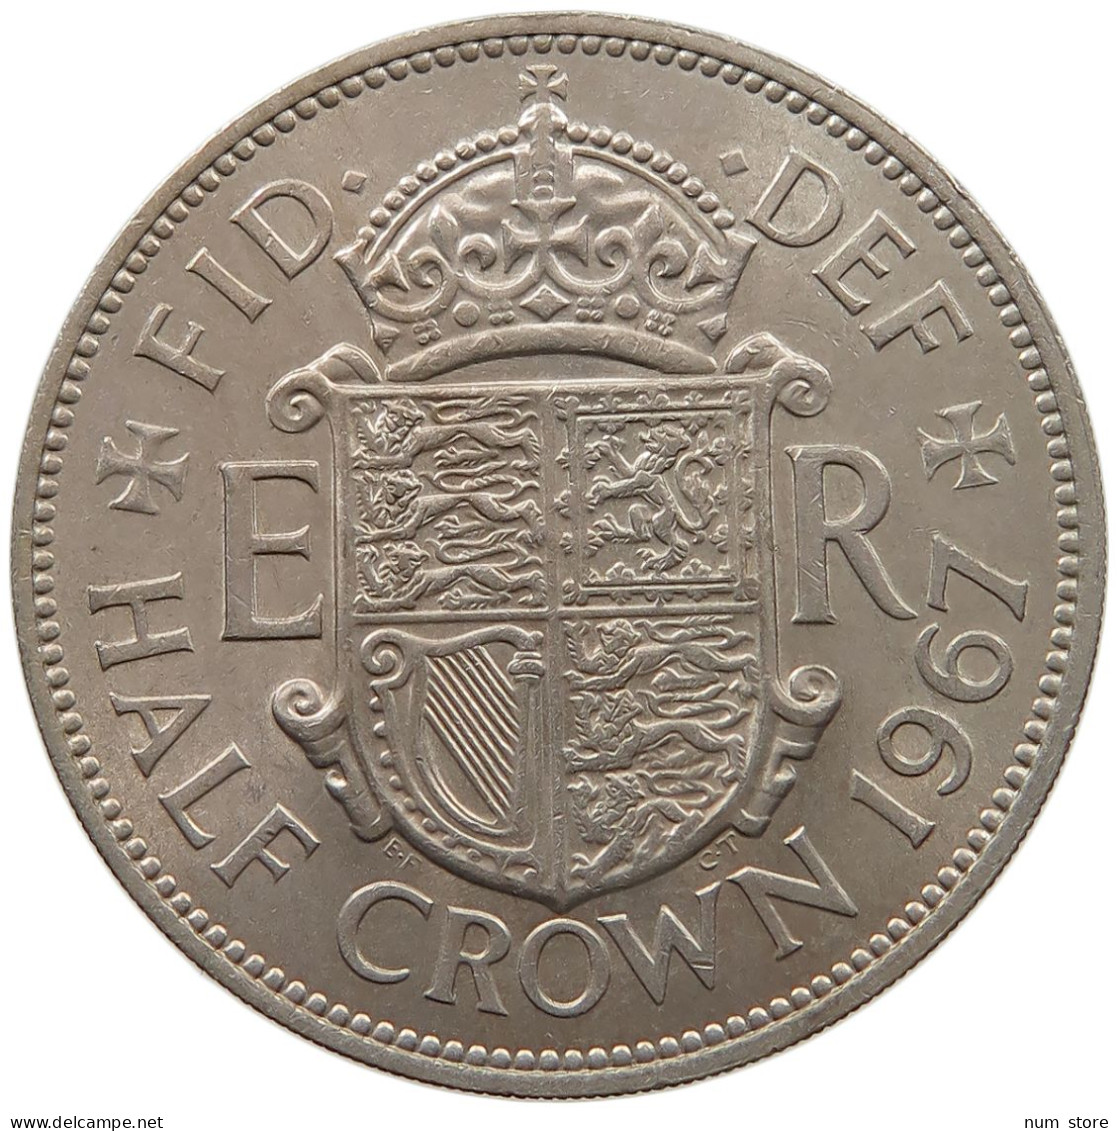 GREAT BRITAIN HALF CROWN 1967 Elisabeth II. (1952-) #s060 0783 - K. 1/2 Crown